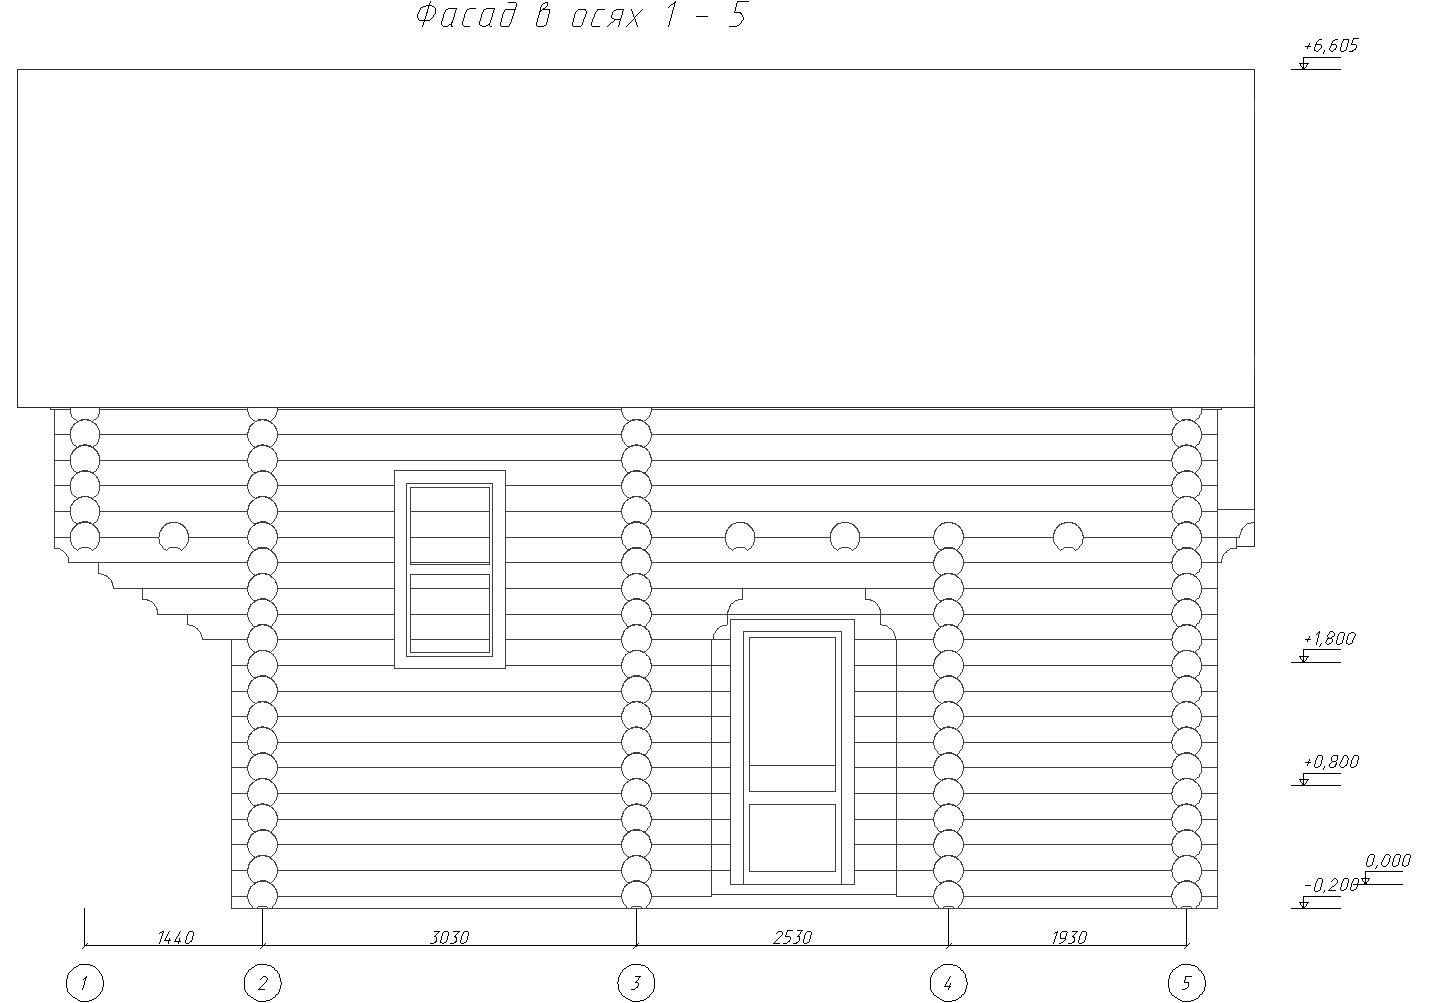 Фасад дома из оцилиндрованного бревна 6x7 с мансардой в осях 1-5